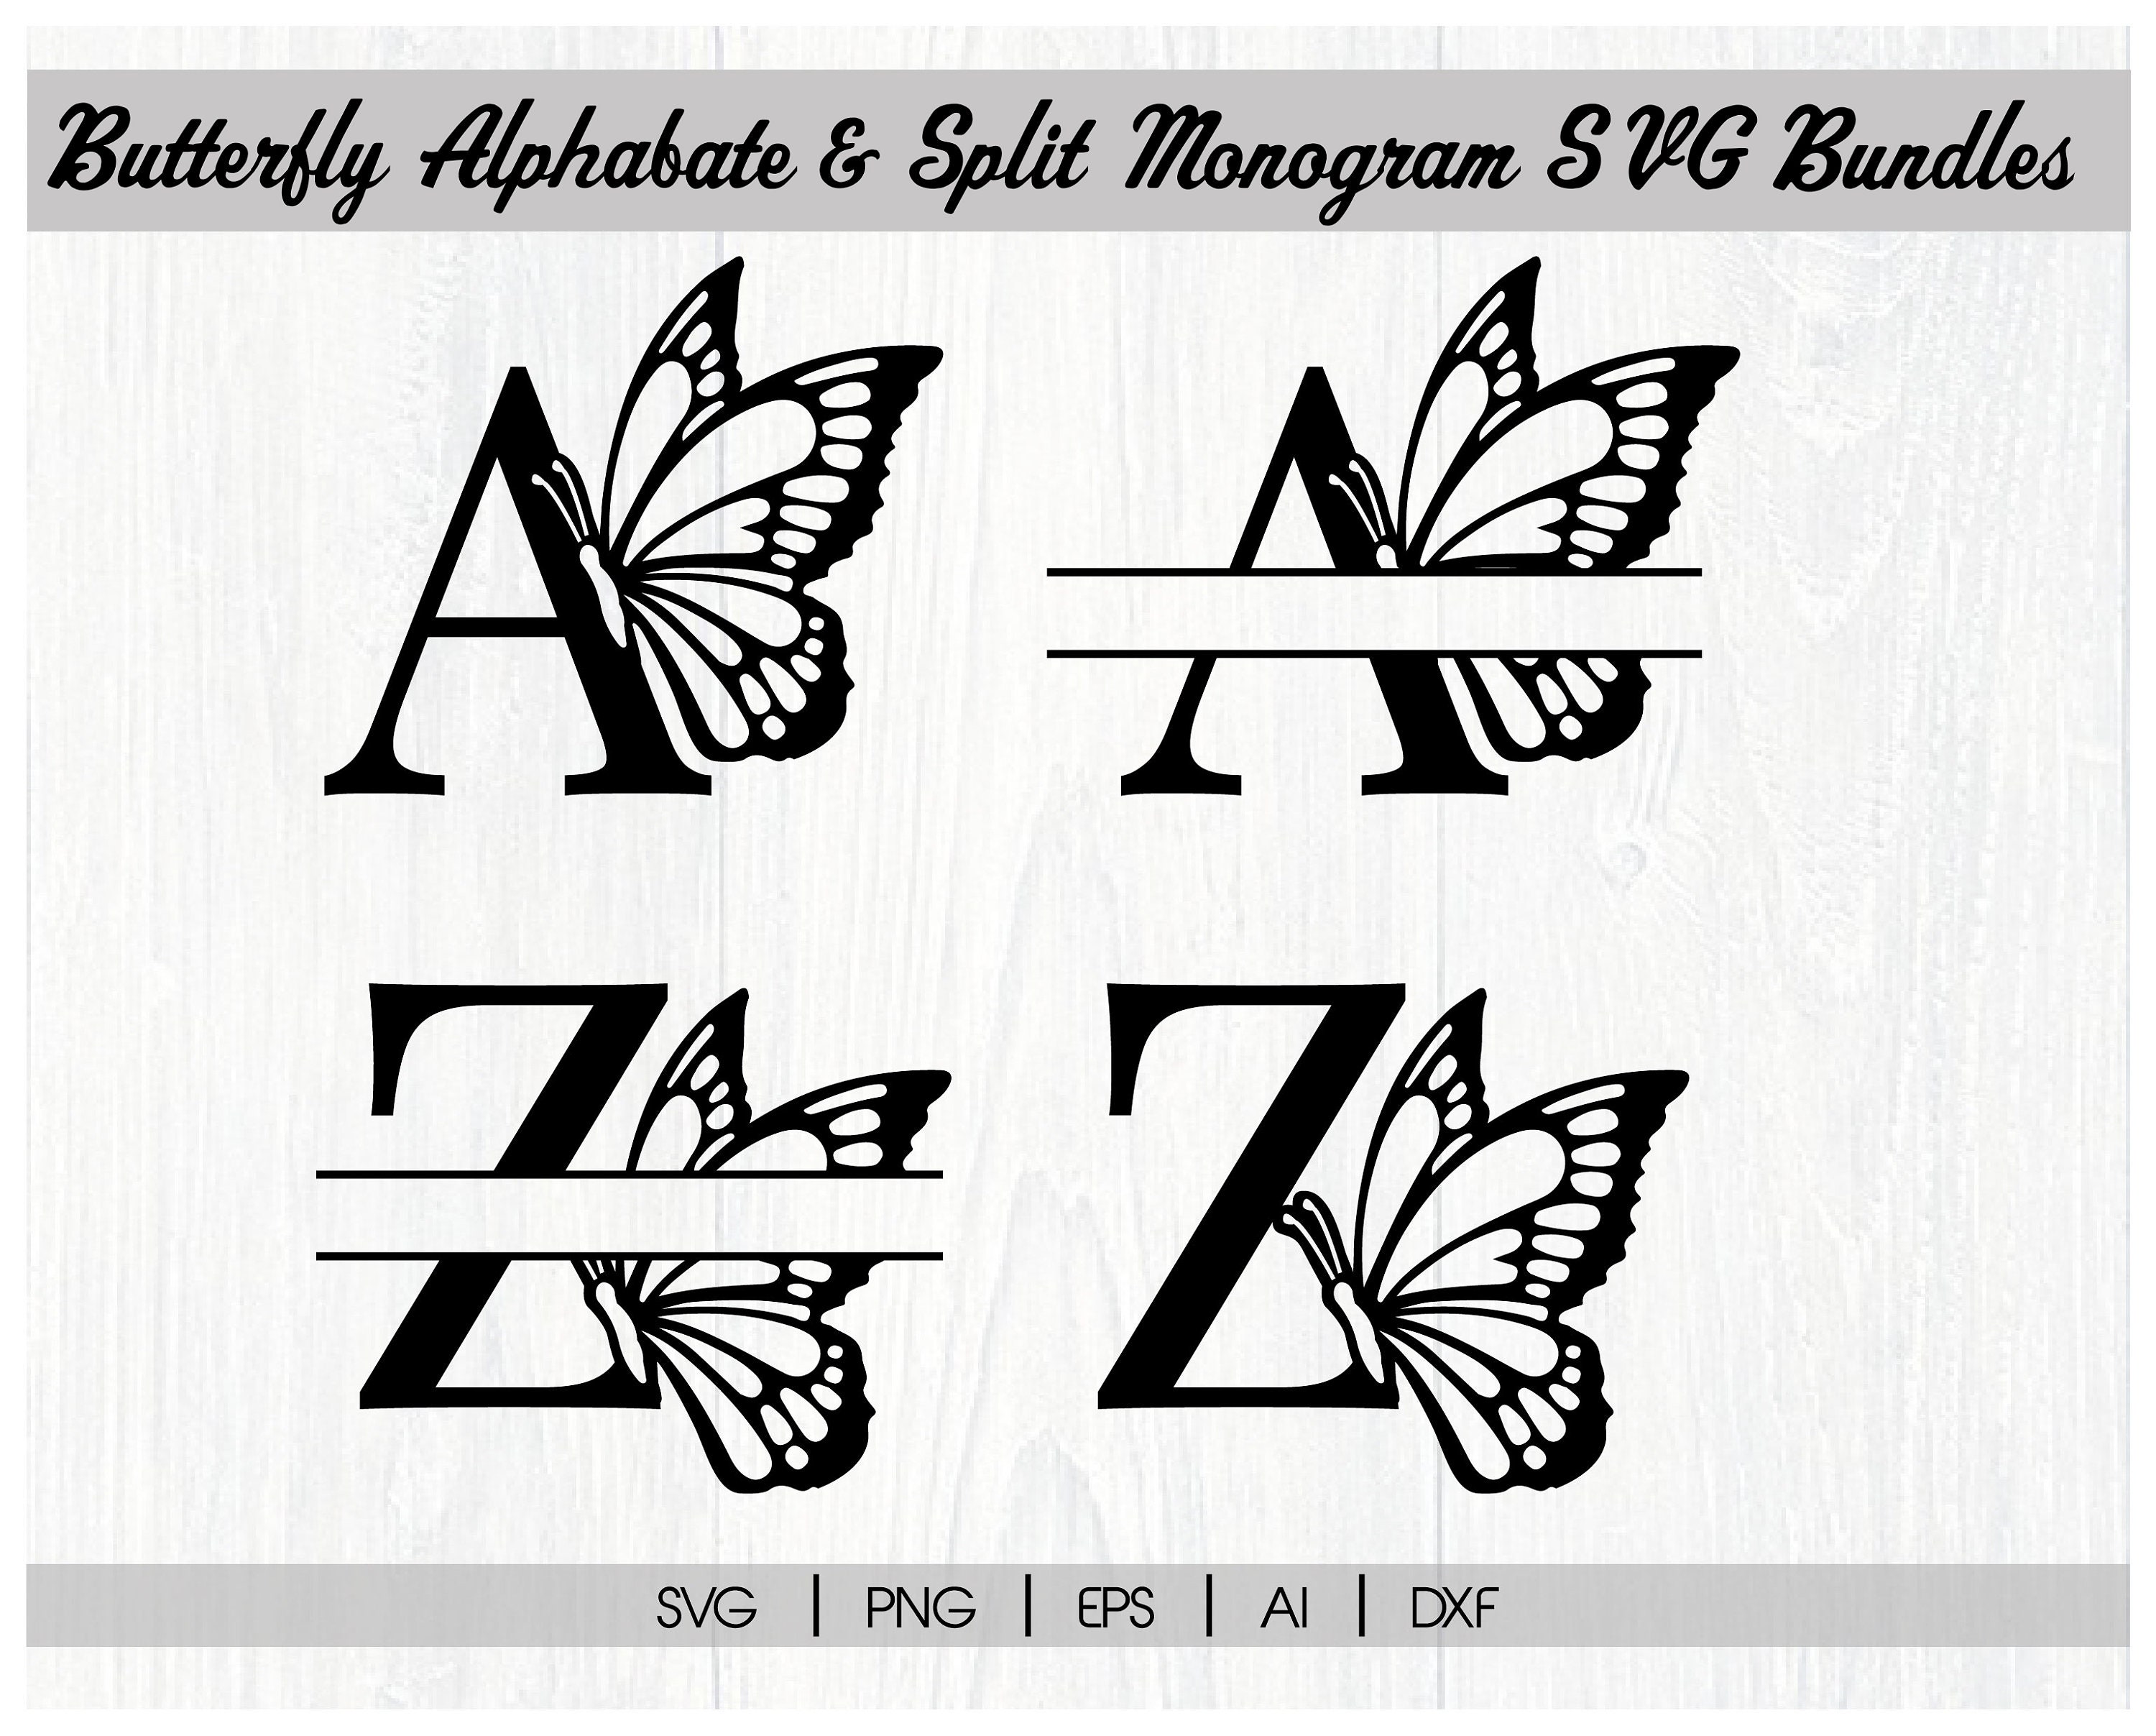 Butterfly Split Monogram svgButterfly Alphabet Monogram SVG | Etsy